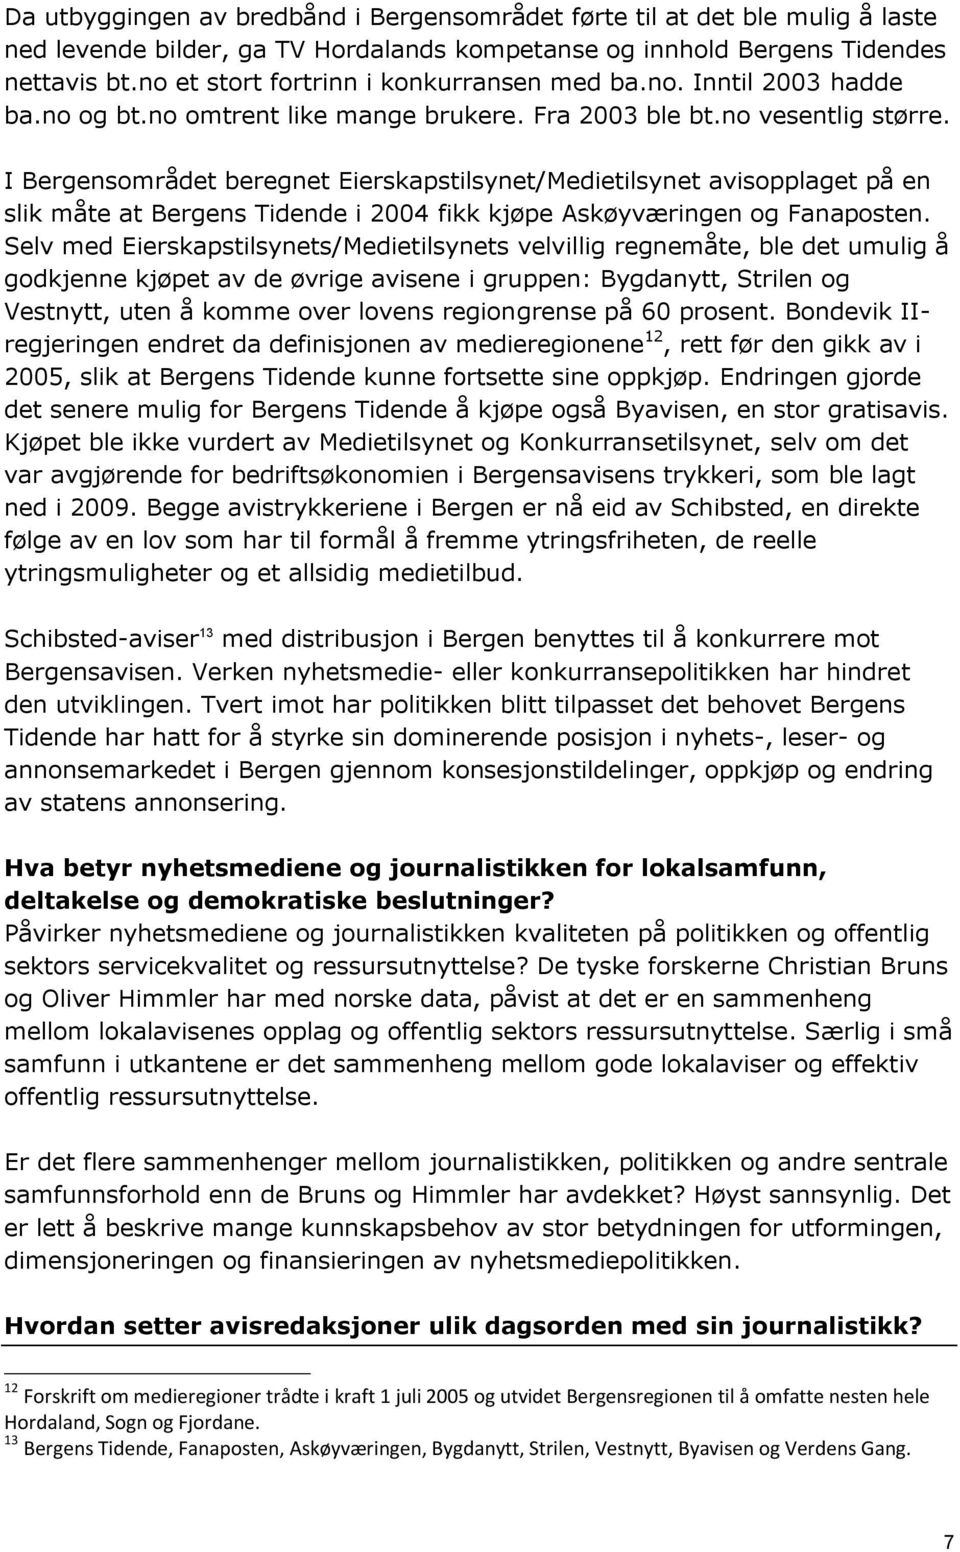 I Bergensområdet beregnet Eierskapstilsynet/Medietilsynet avisopplaget på en slik måte at Bergens Tidende i 2004 fikk kjøpe Askøyværingen og Fanaposten.